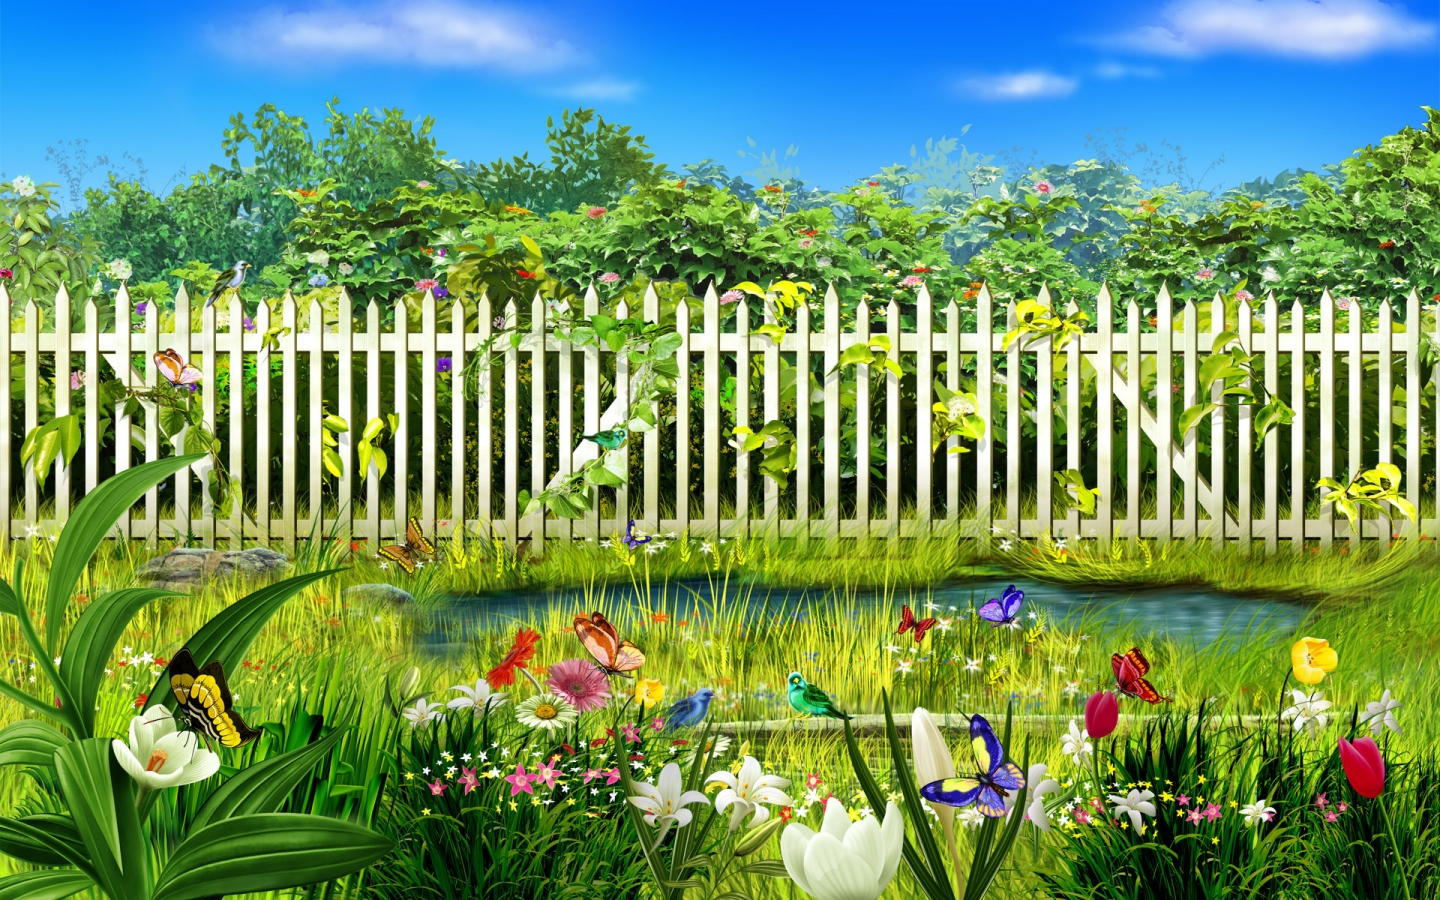 Spring garden for 1440 x 900 widescreen resolution